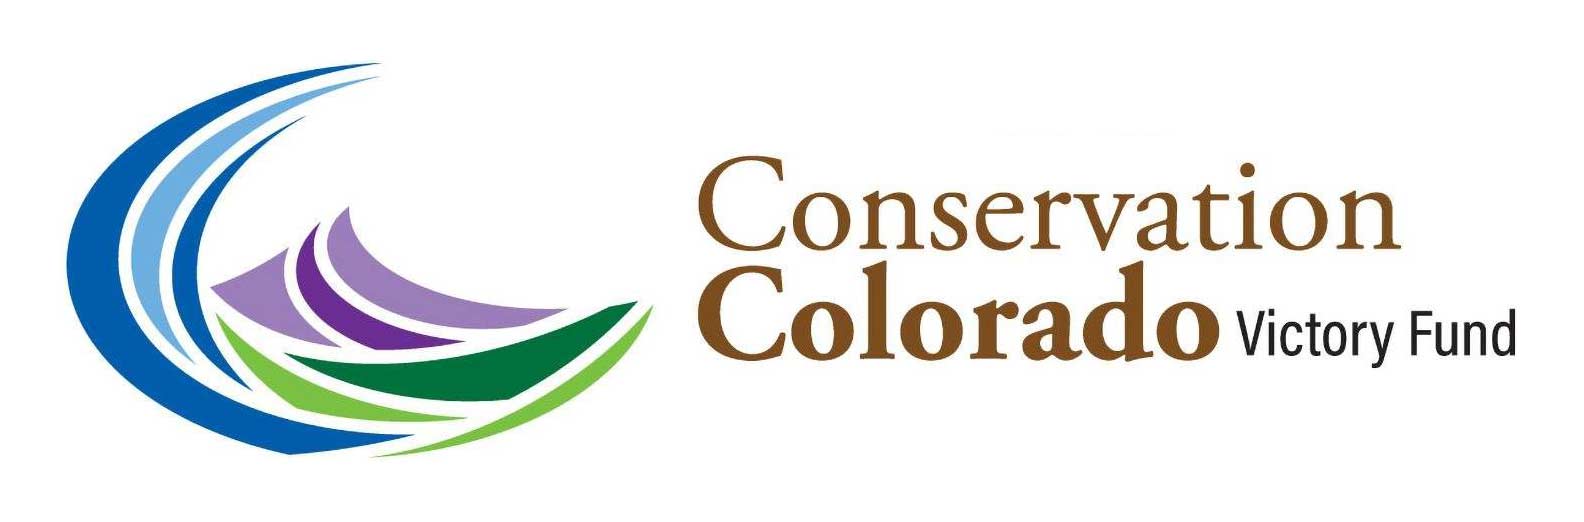 Conservation Colorado Victory Fund